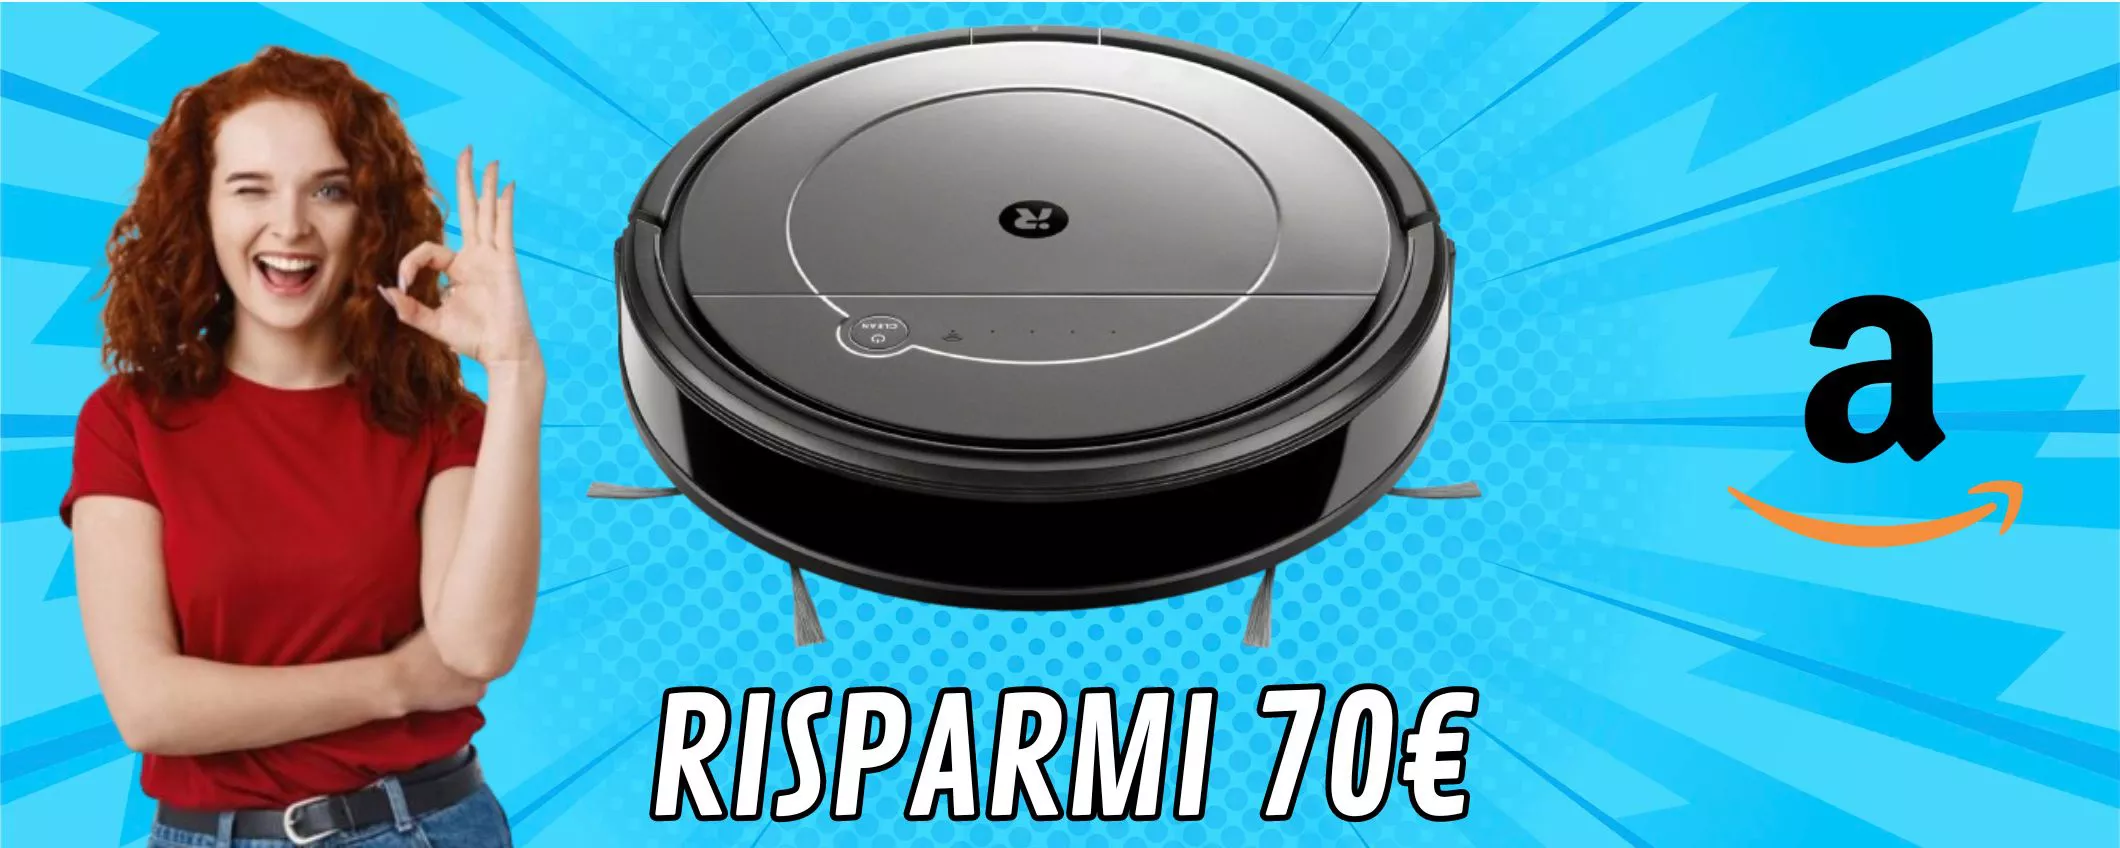 iRobot Roomba Combo: fa tutto lui! Risparmio top MENO 70 euro!